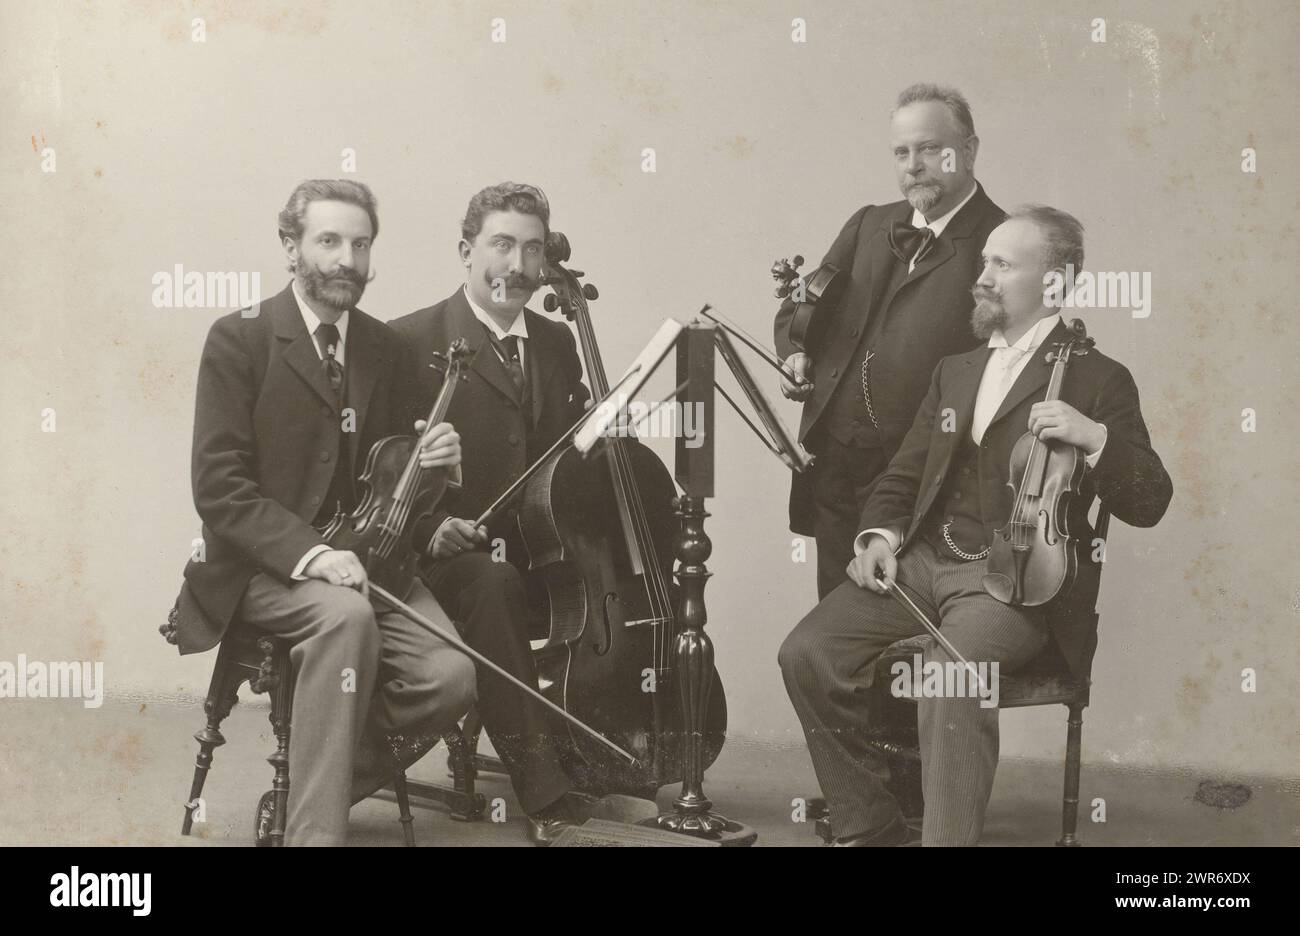 Gruppenporträt eines Streichquartetts, dieses Foto ist Teil eines Albums. W. Hoffert, 1901, Pappe, Gelatine, Silberdruck. Höhe 134 mm x Breite 196 mm, Foto Stockfoto